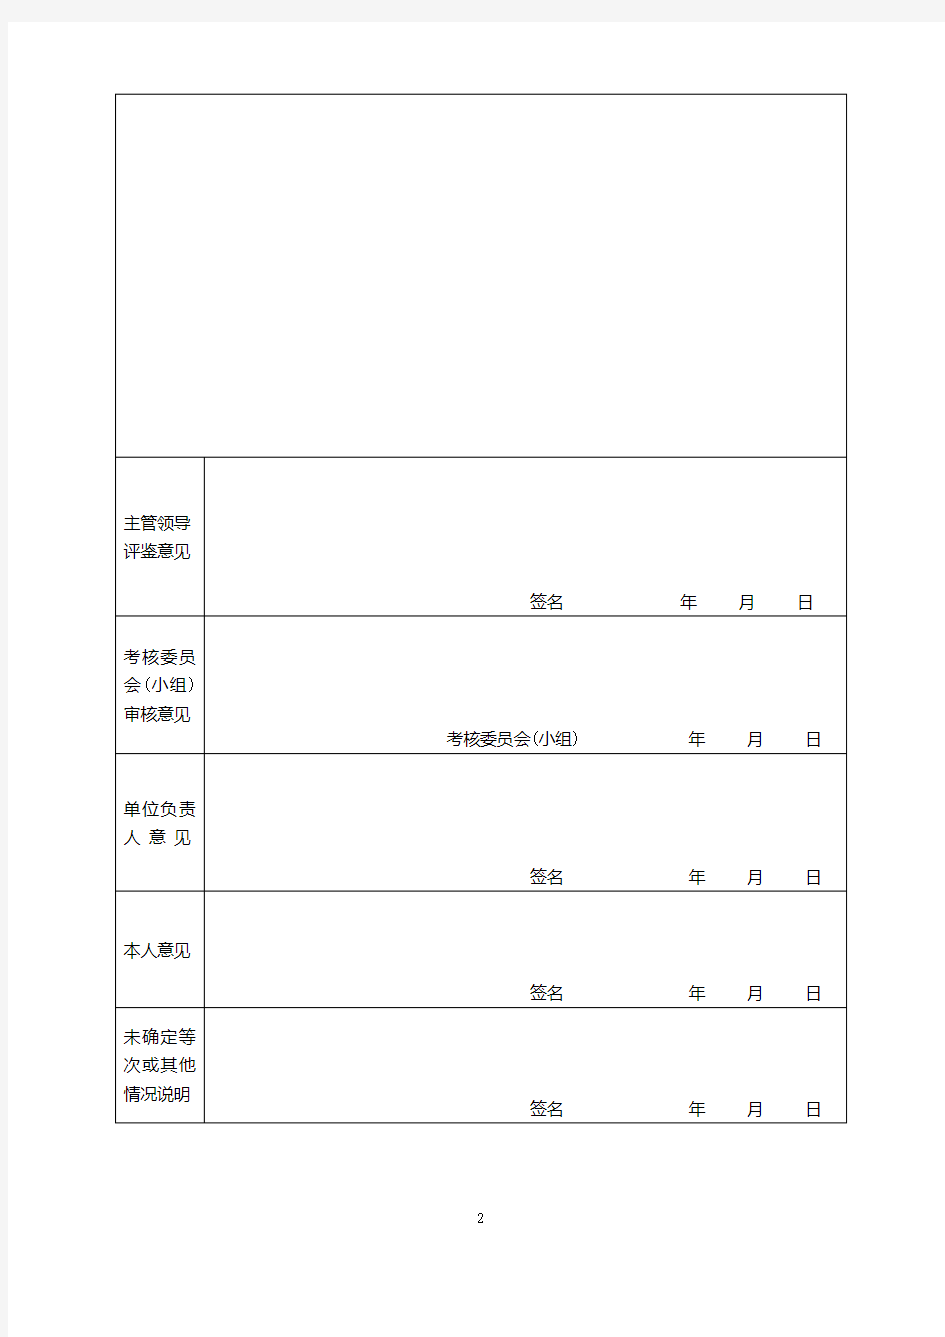 扬州市事业单位工作人员年度考核登记表